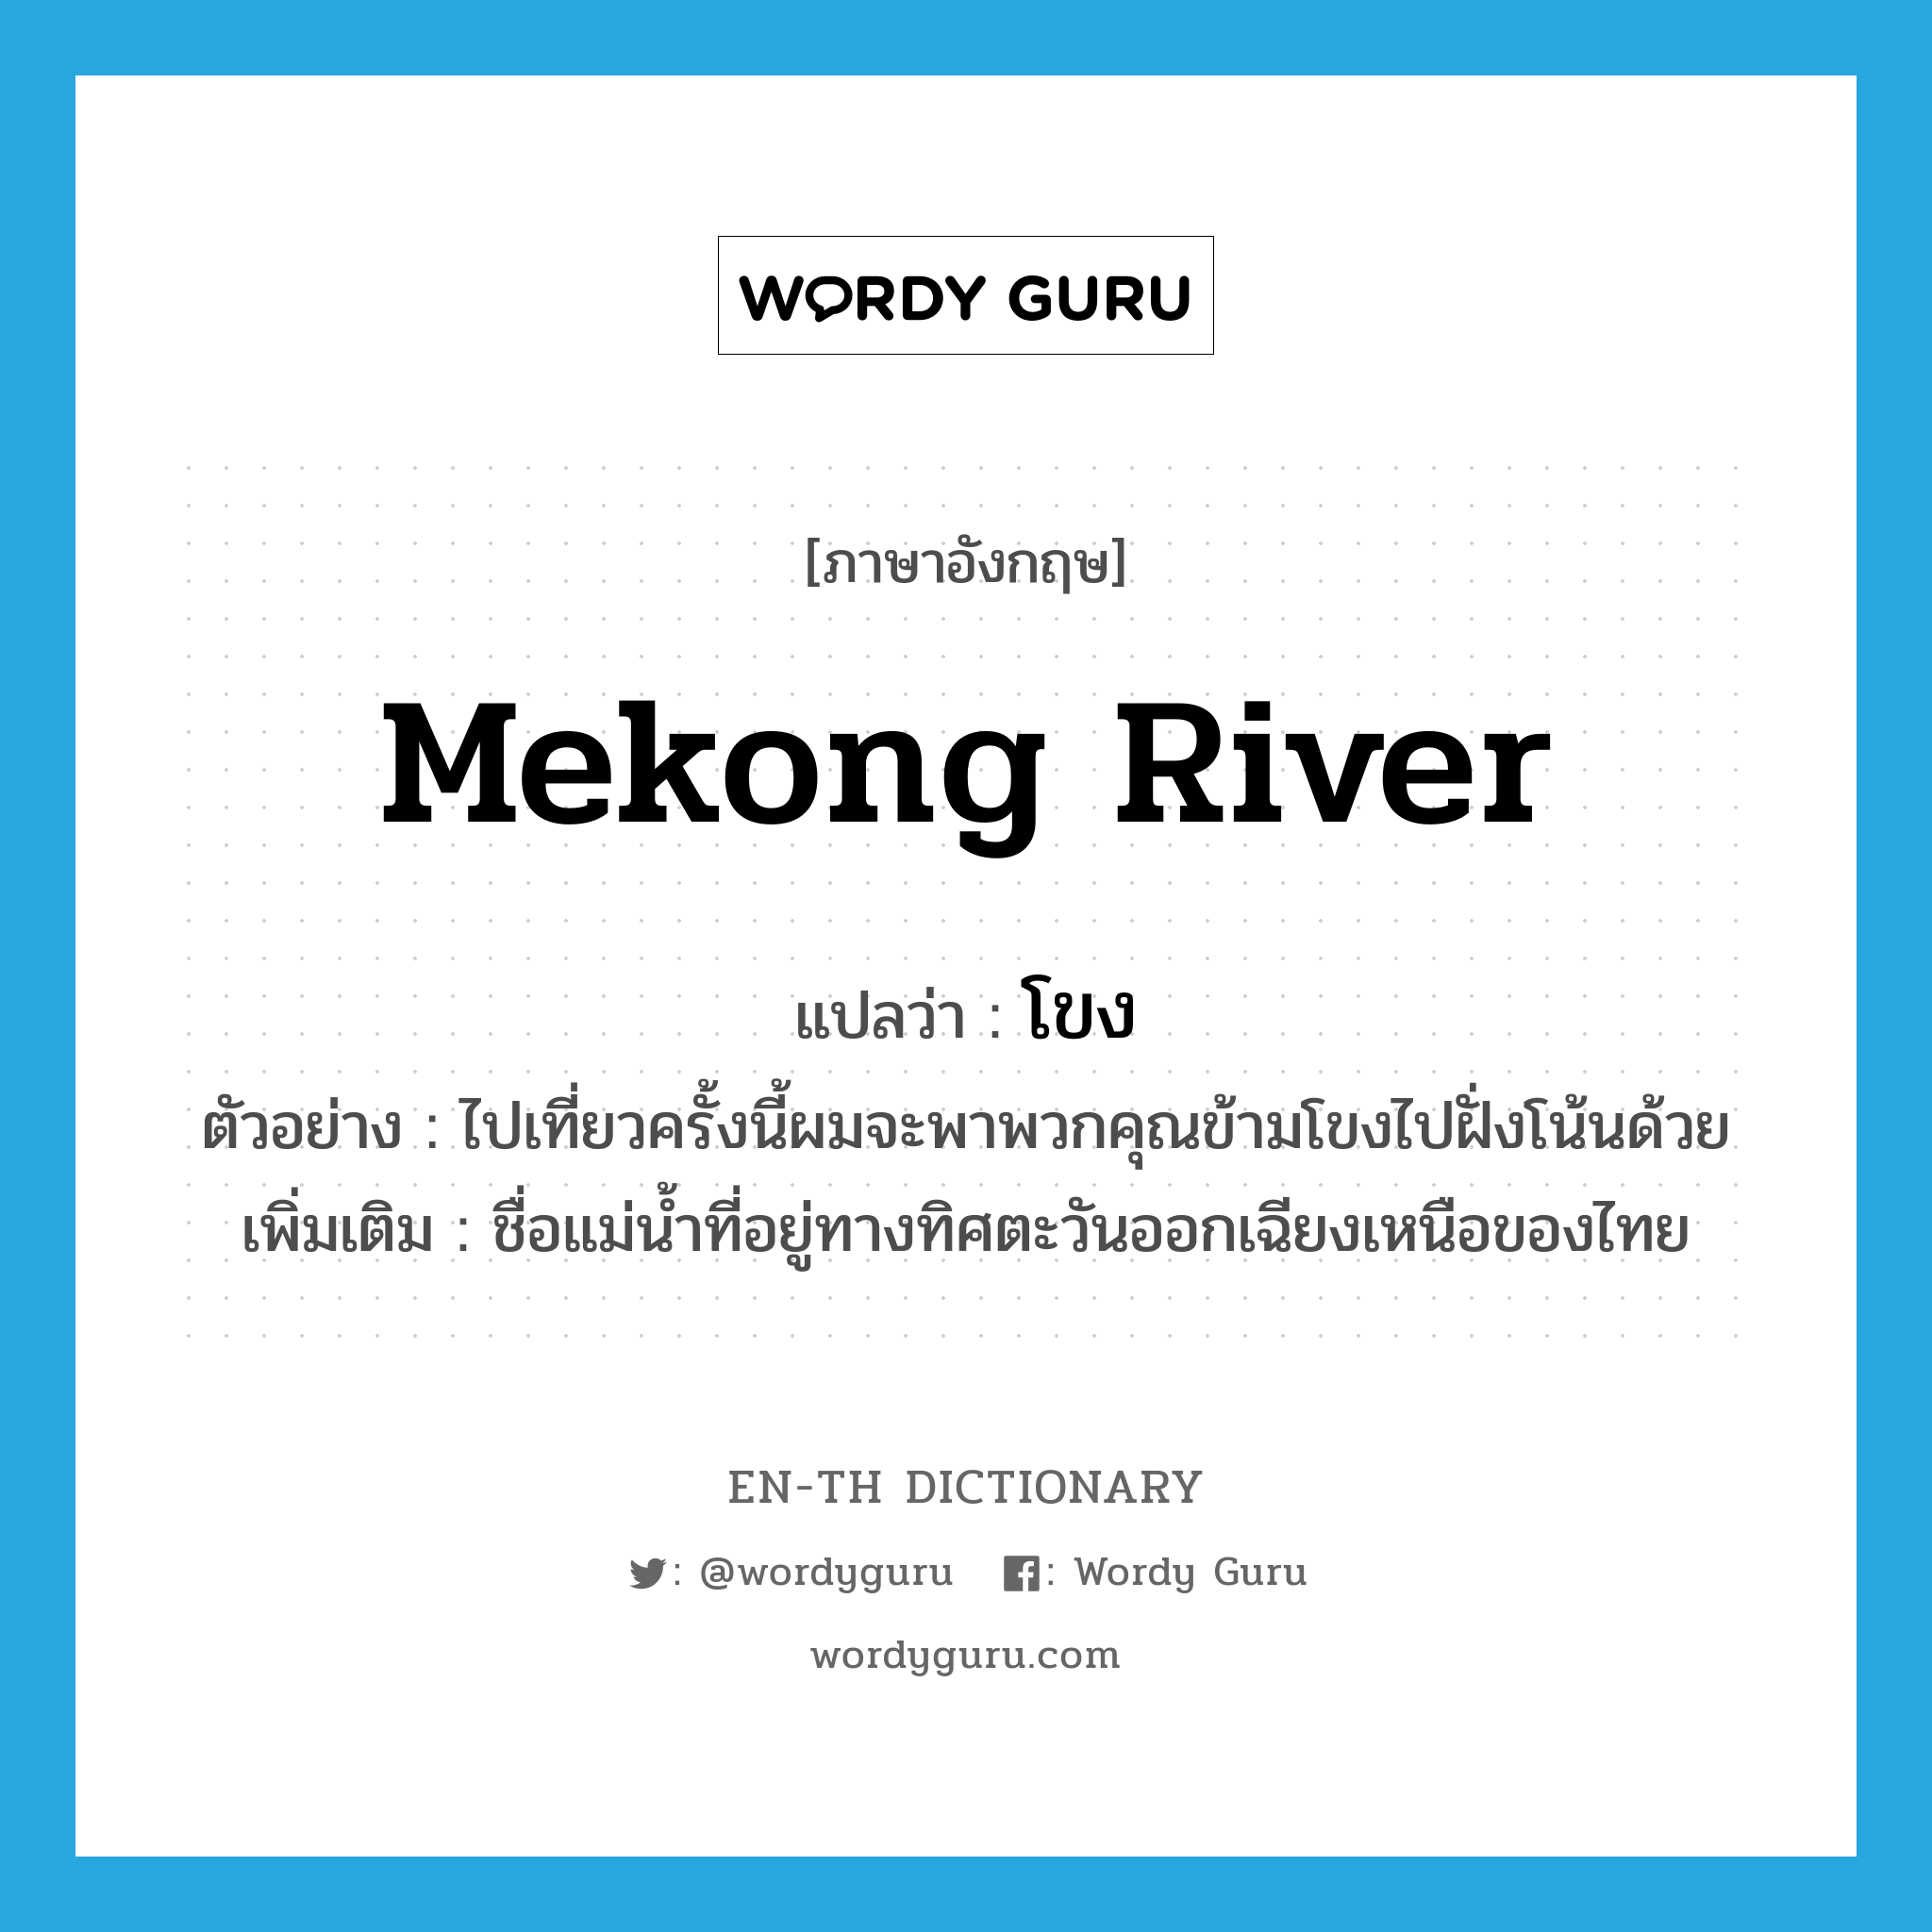 โขง ภาษาอังกฤษ?, คำศัพท์ภาษาอังกฤษ โขง แปลว่า Mekong River ประเภท N ตัวอย่าง ไปเที่ยวครั้งนี้ผมจะพาพวกคุณข้ามโขงไปฝั่งโน้นด้วย เพิ่มเติม ชื่อแม่น้ำที่อยู่ทางทิศตะวันออกเฉียงเหนือของไทย หมวด N